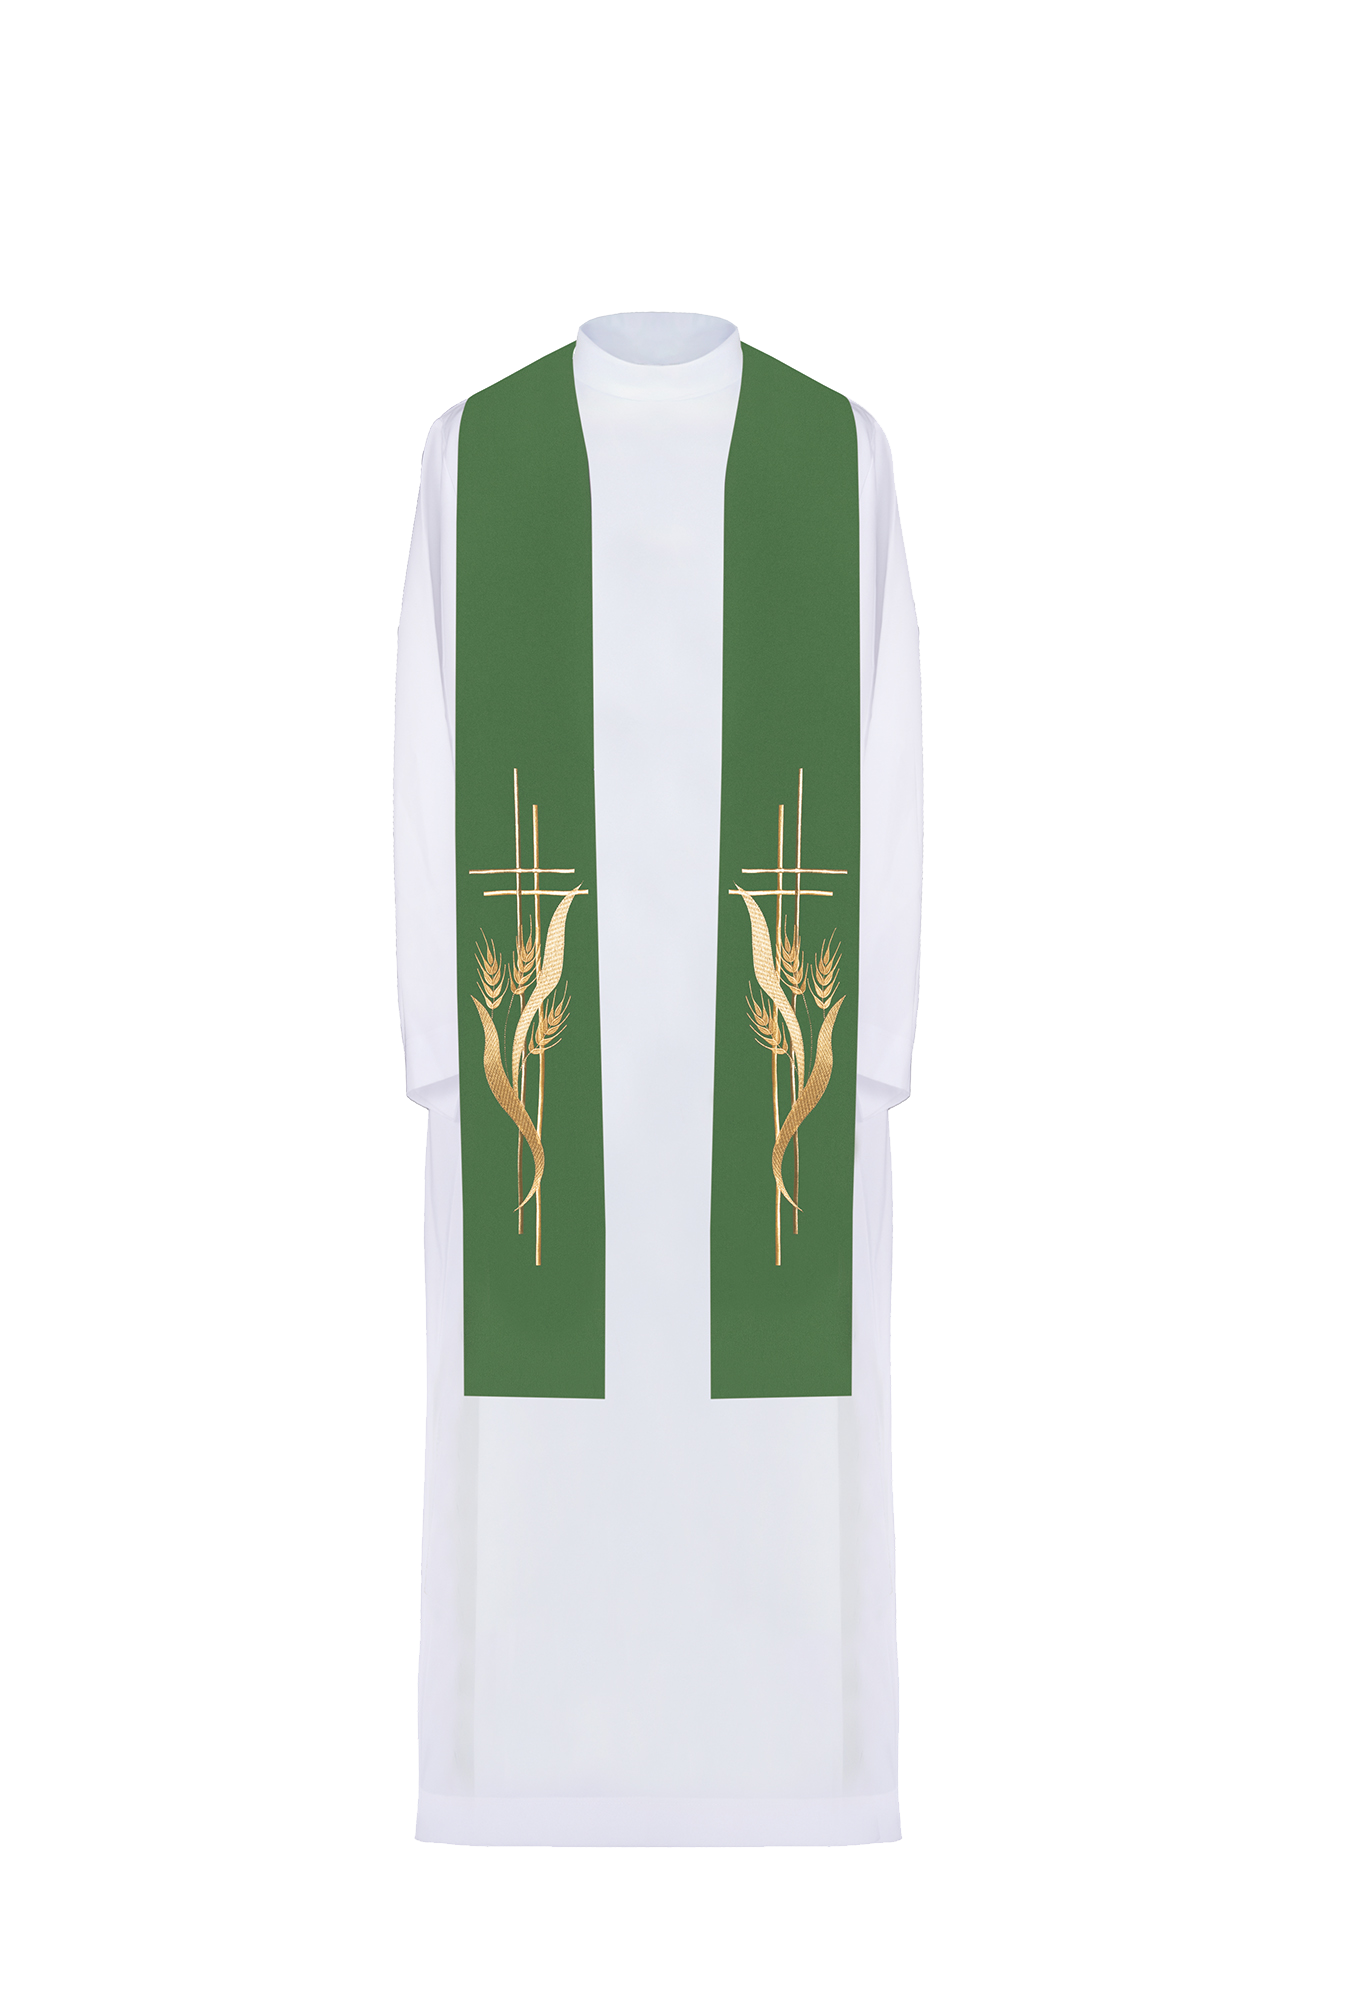 Stuła kapłańska zielona haftowana